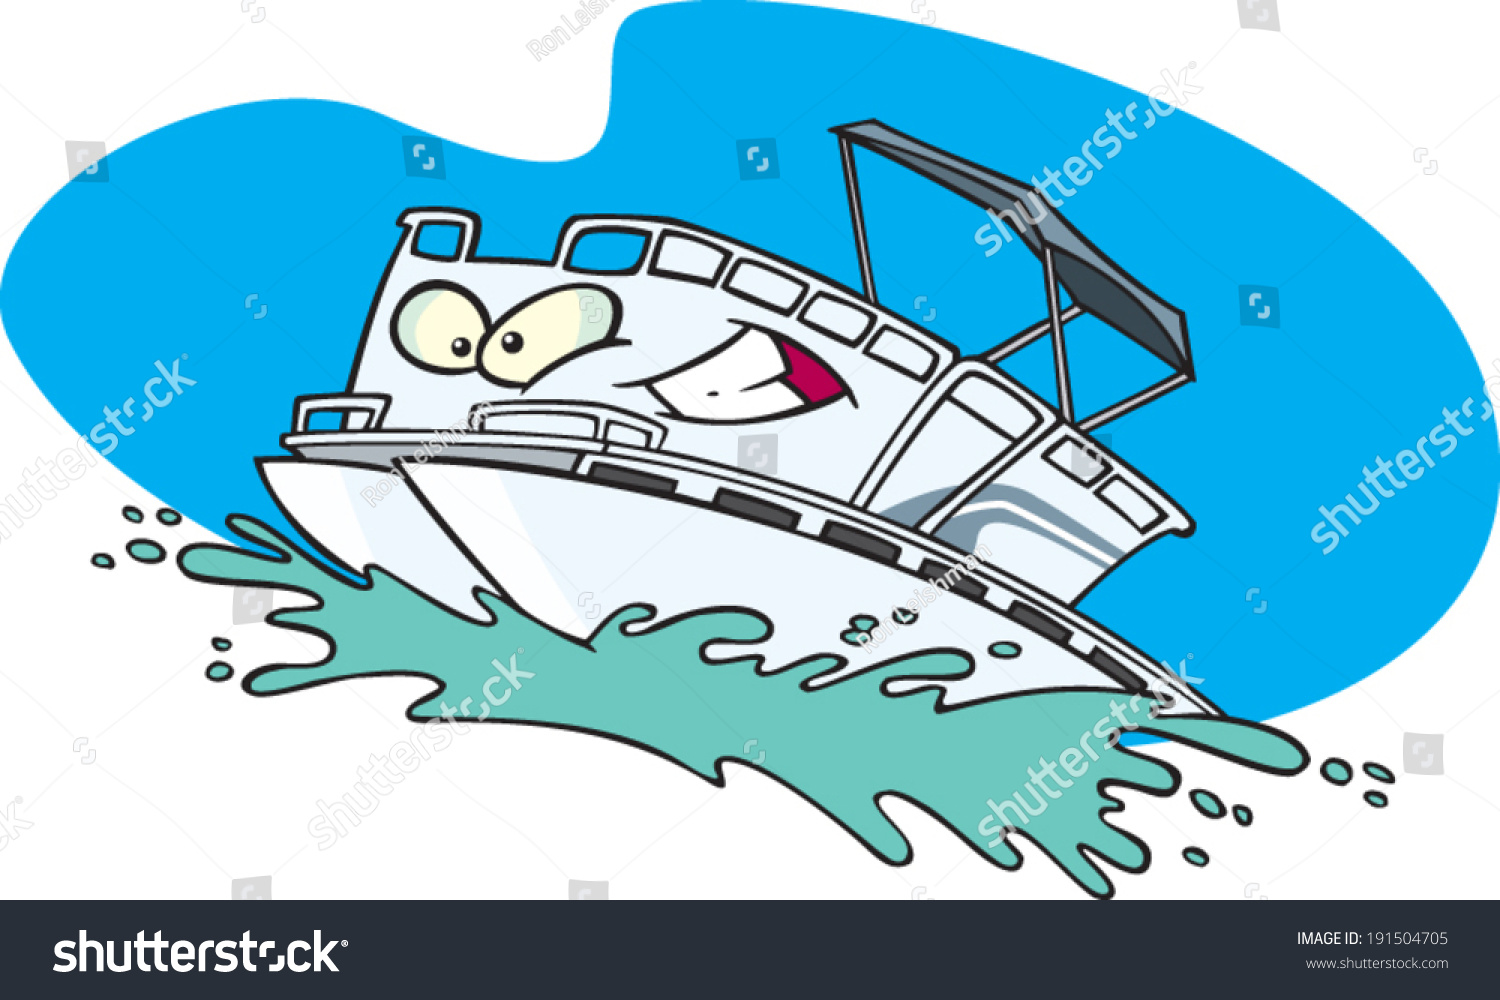 Cartoon Pontoon Boat Stock Vector Royalty Free 191504705